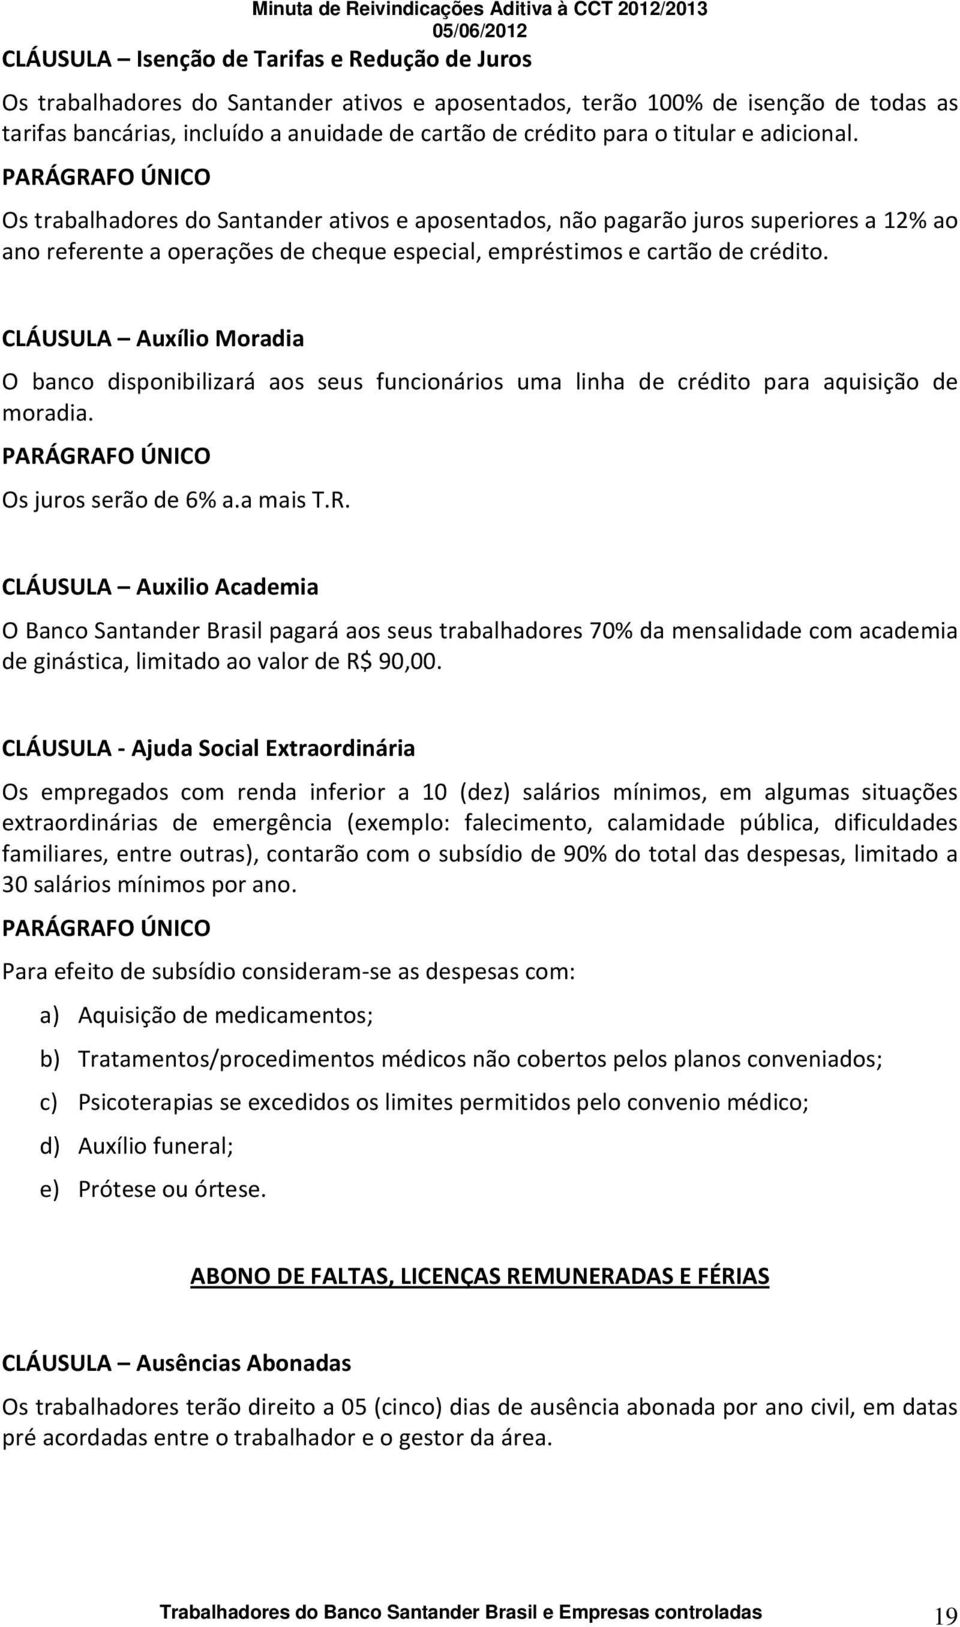 PARÁGRAFO ÚNICO Os trabalhadores do Santander ativos e aposentados, não pagarão juros superiores a 12% ao ano referente a operações de cheque especial, empréstimos e cartão de crédito.